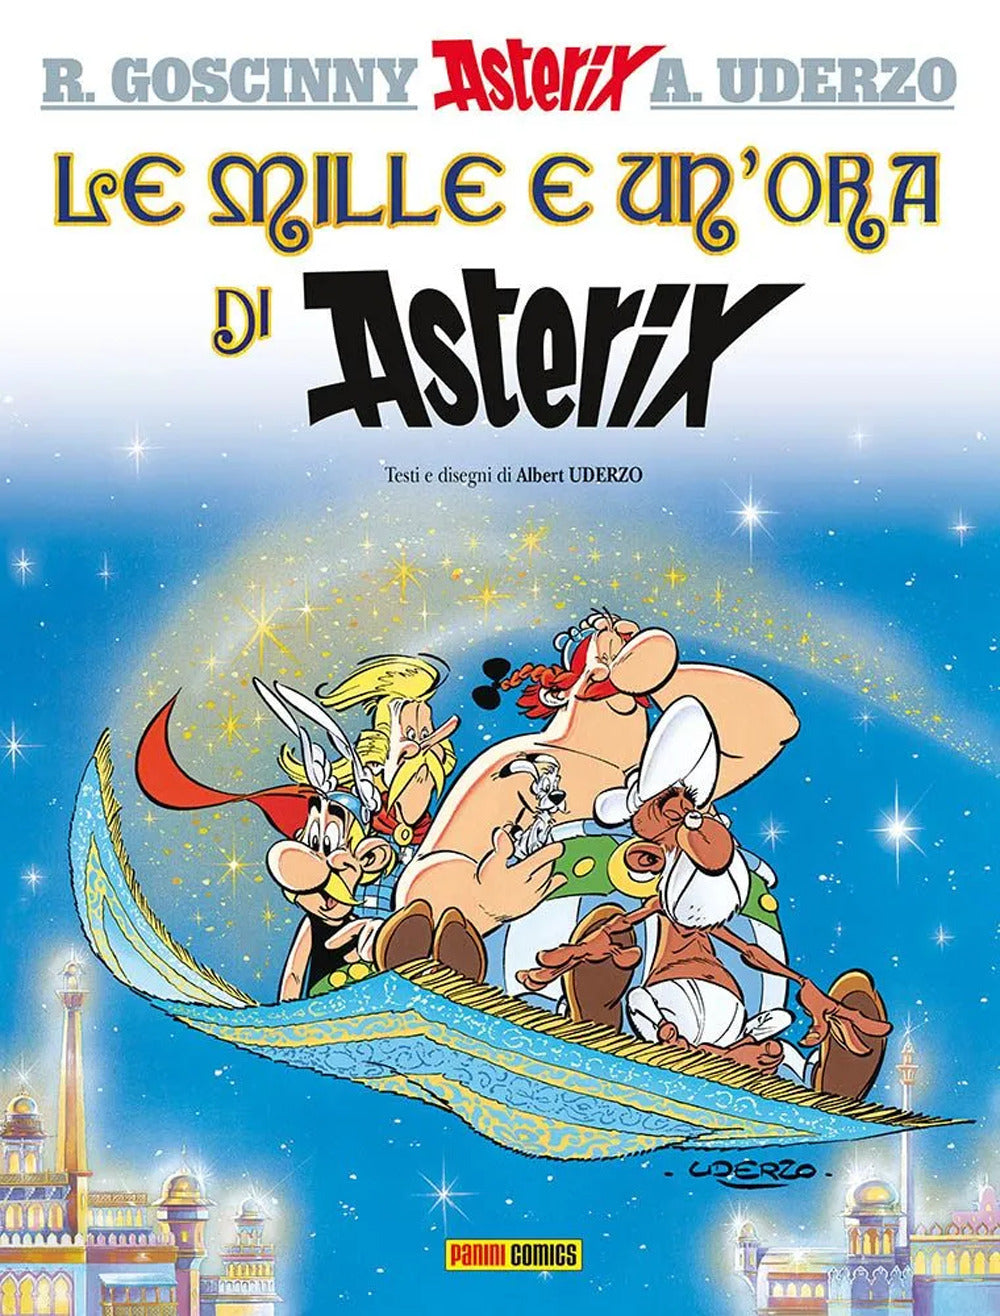 Le mille e un'ora di Asterix.